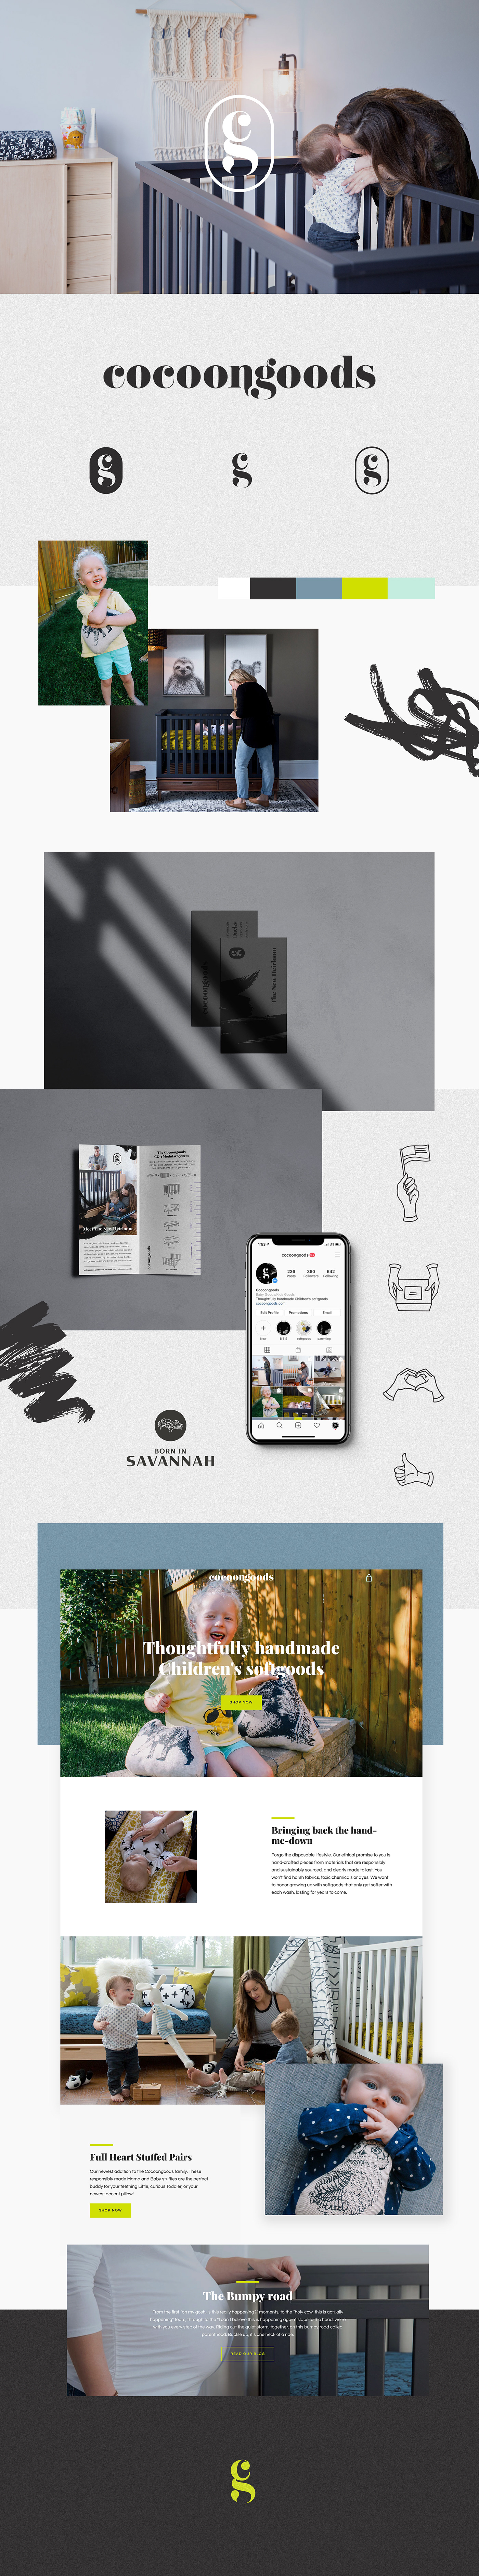 branding  ILLUSTRATION  icon design  Shopify online store Brand Design social media